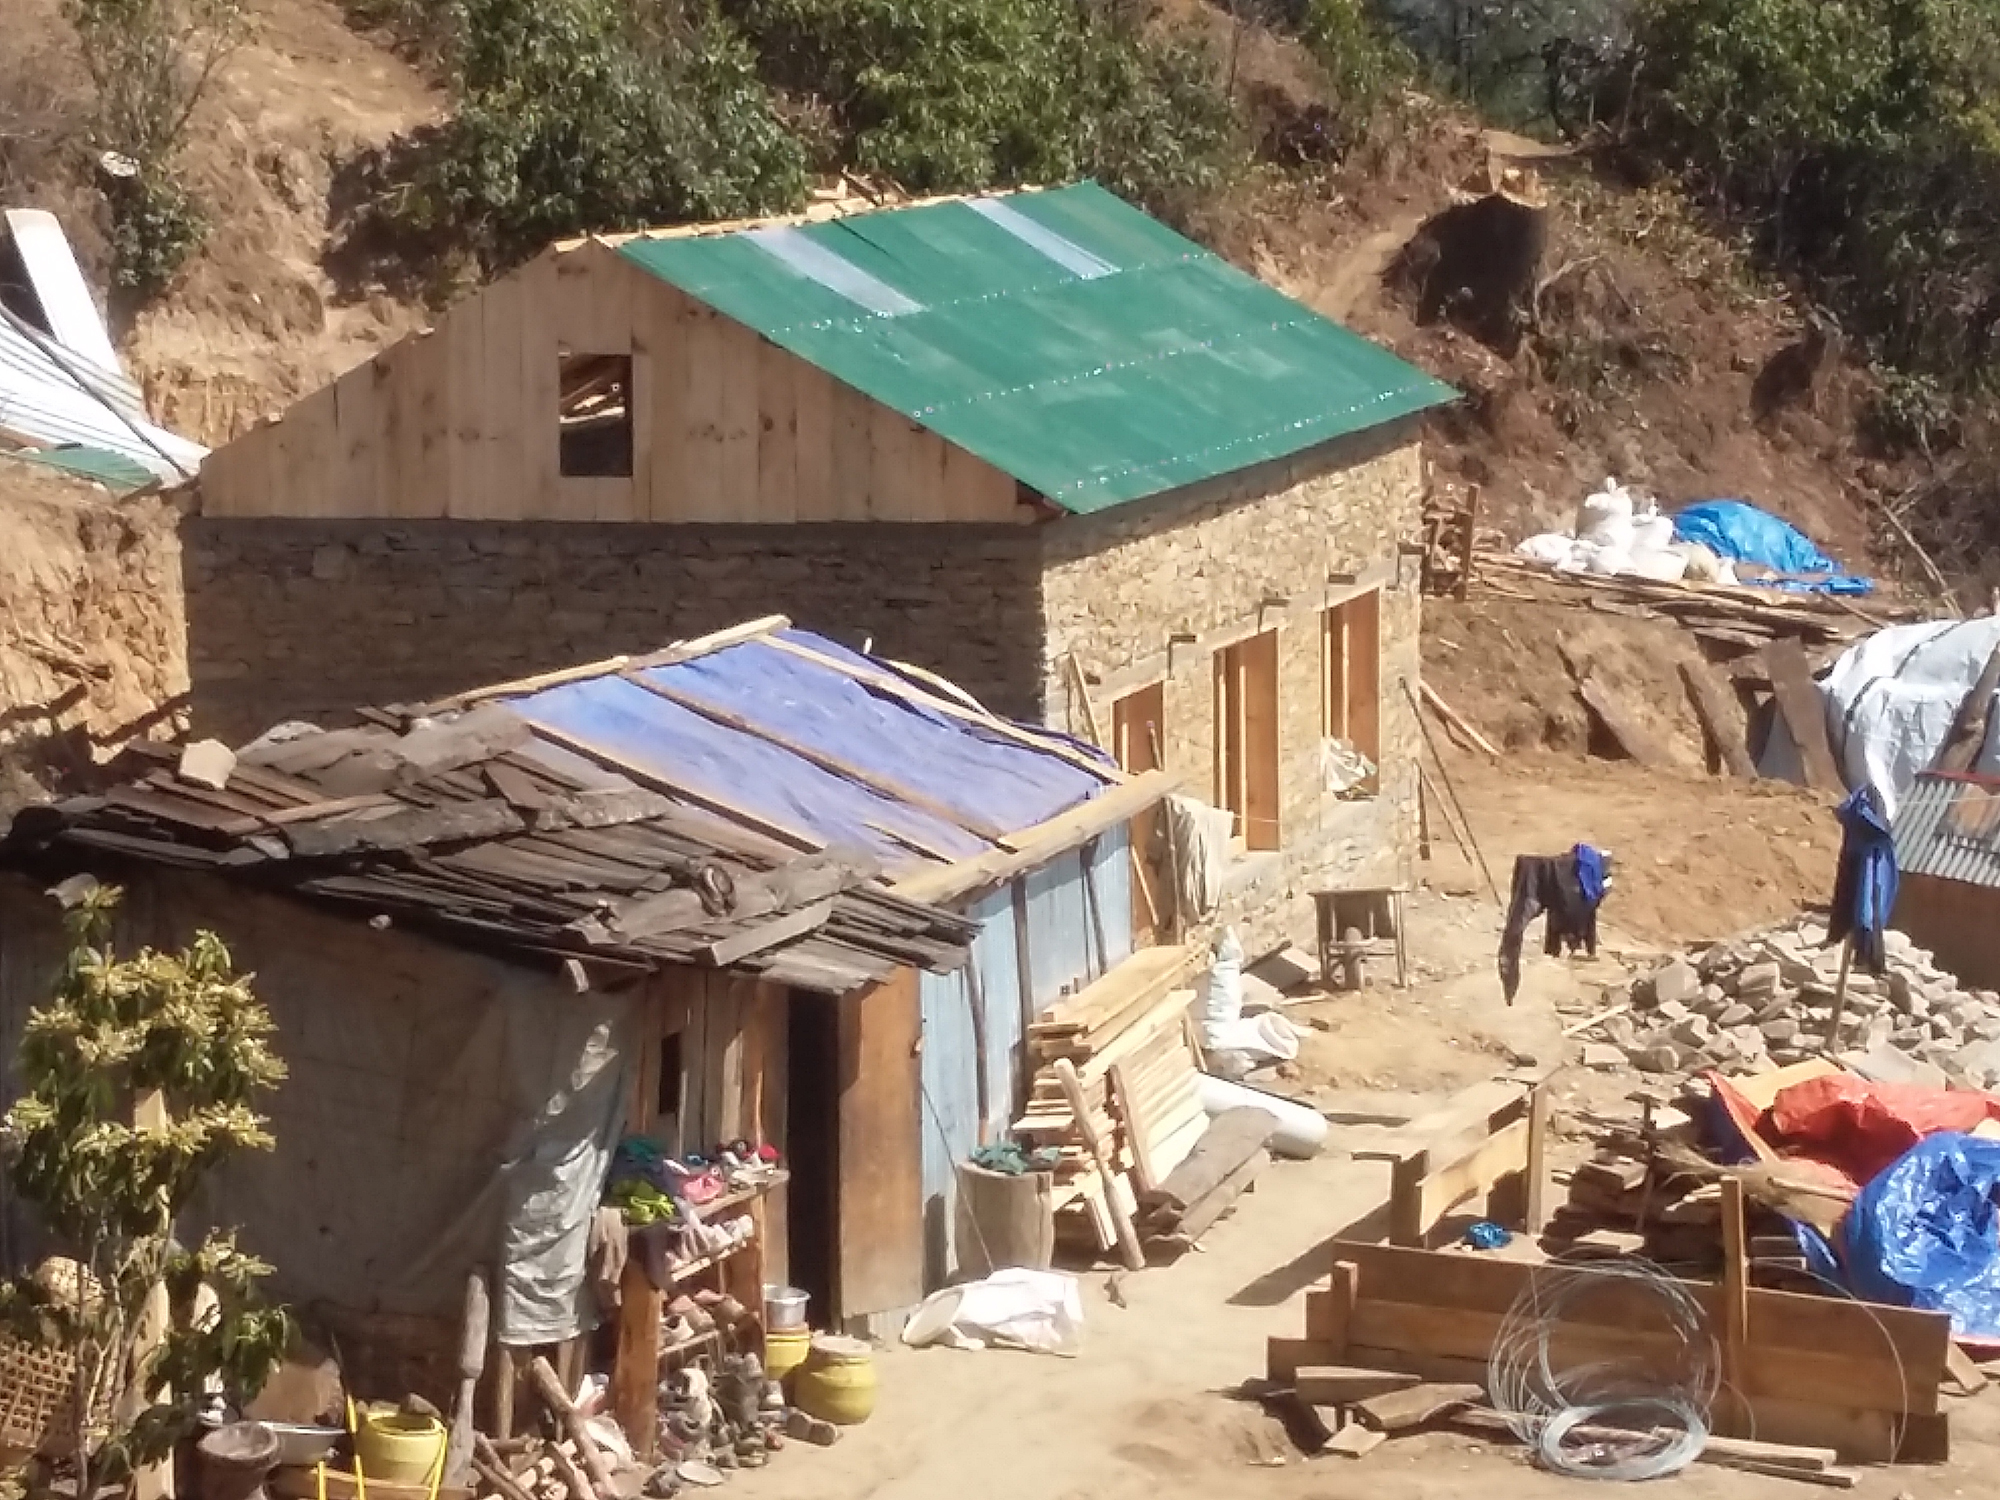 New house for Bishnu Sunuwar